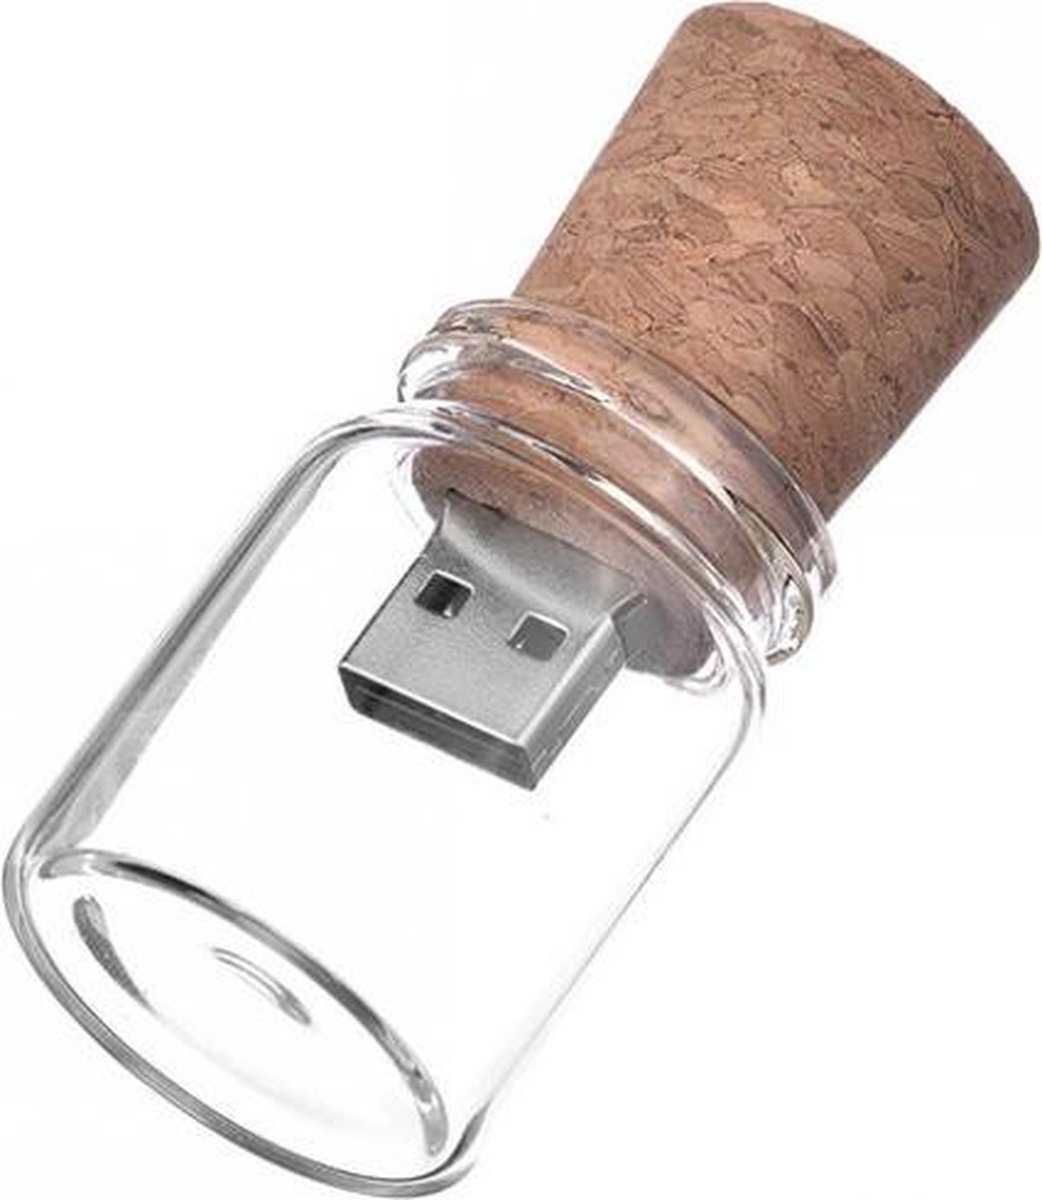 Glazen fles met kurk usb stick 16GB -1 jaar garantie – A graden klasse chip